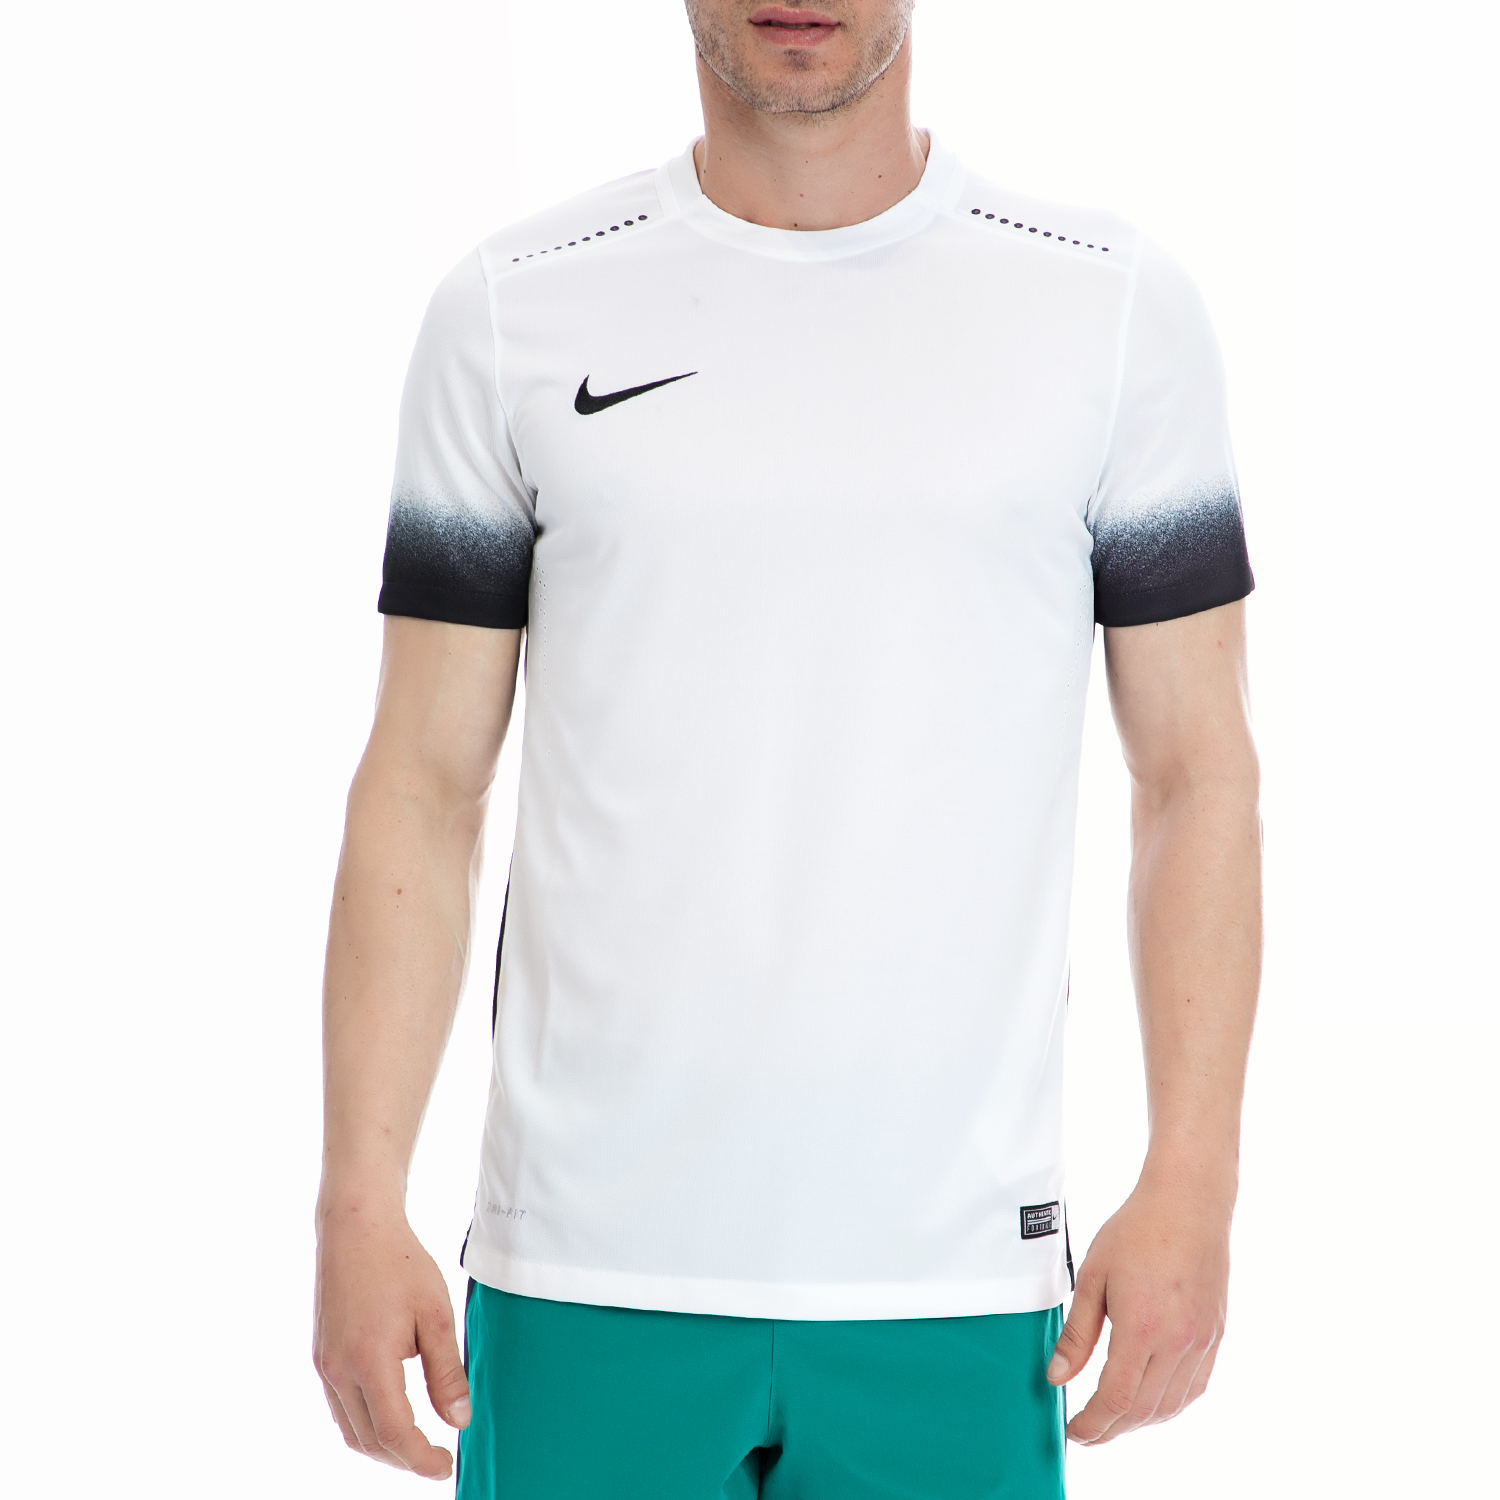 Ανδρικά/Ρούχα/Αθλητικά/T-shirt NIKE - Ανδρική αθλητική μπλούζα NIKE λευκή